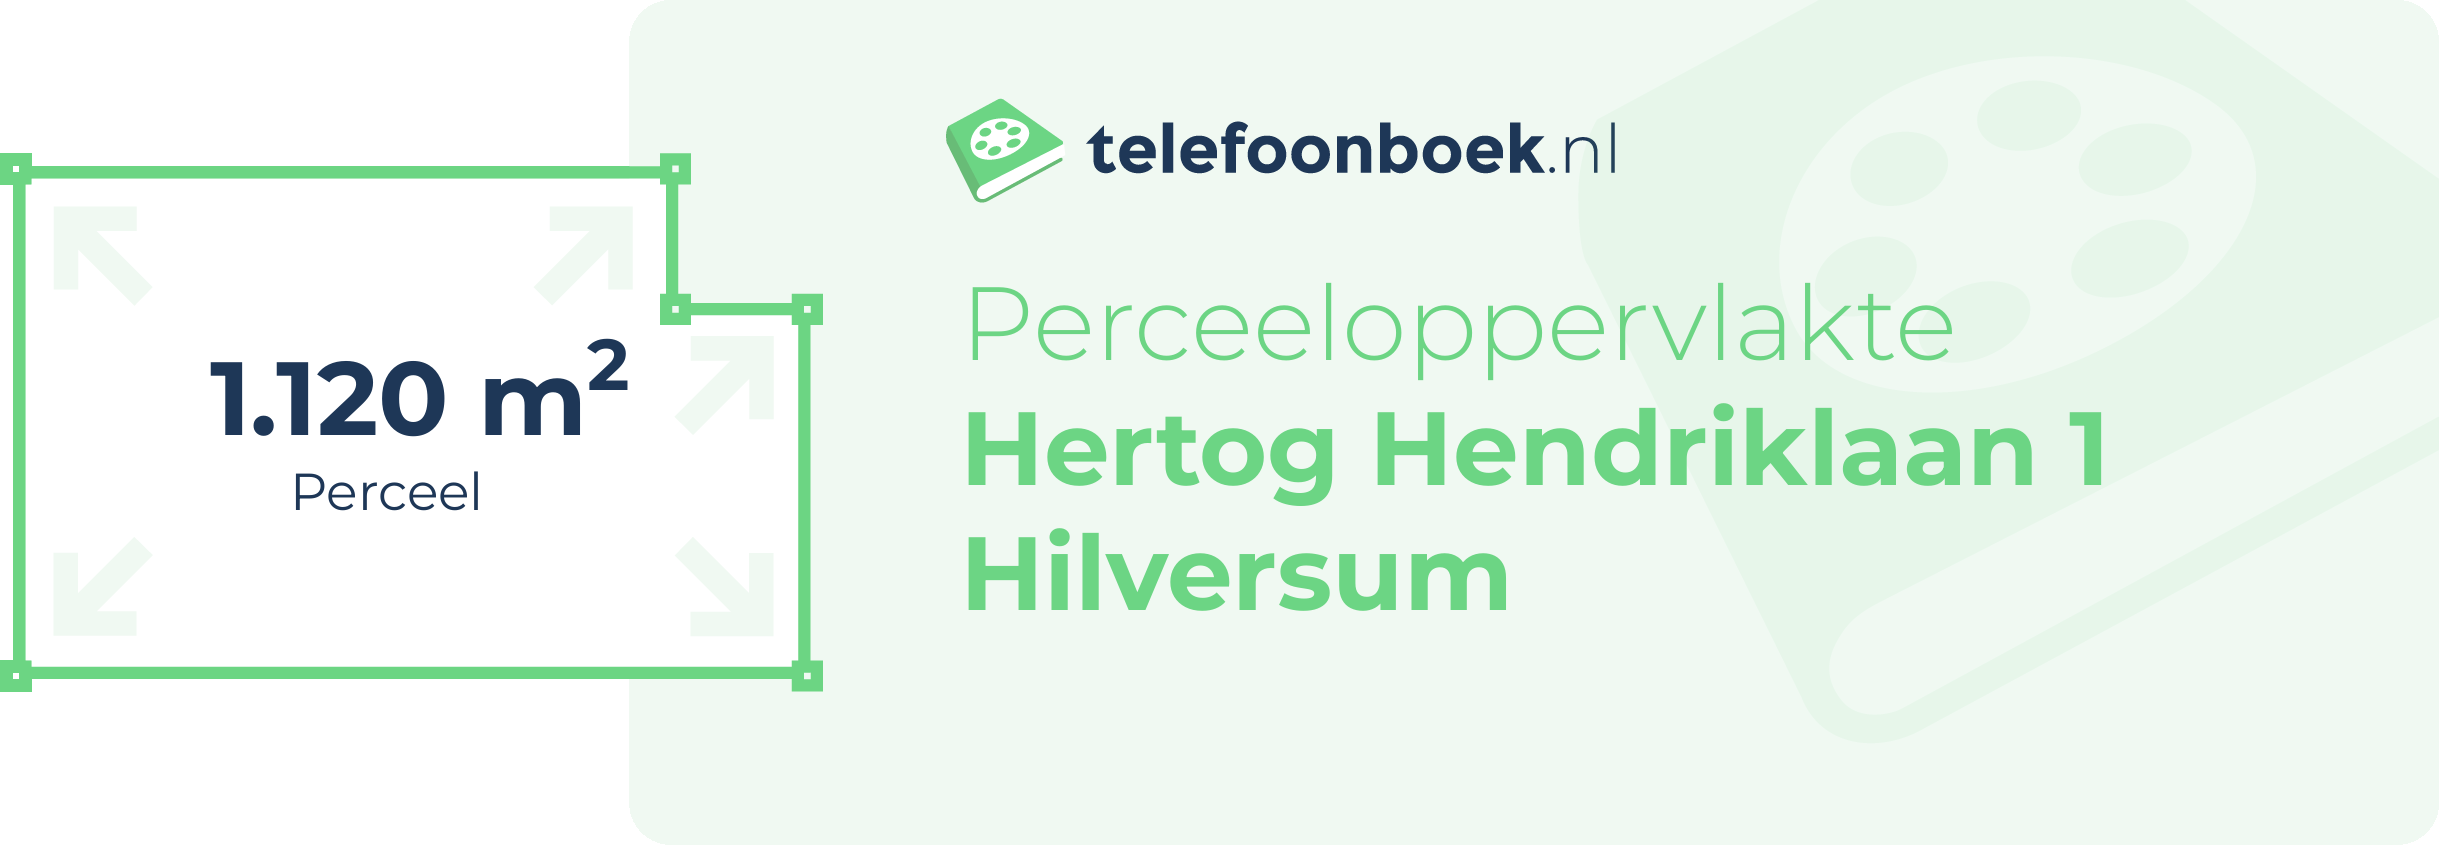 Perceeloppervlakte Hertog Hendriklaan 1 Hilversum